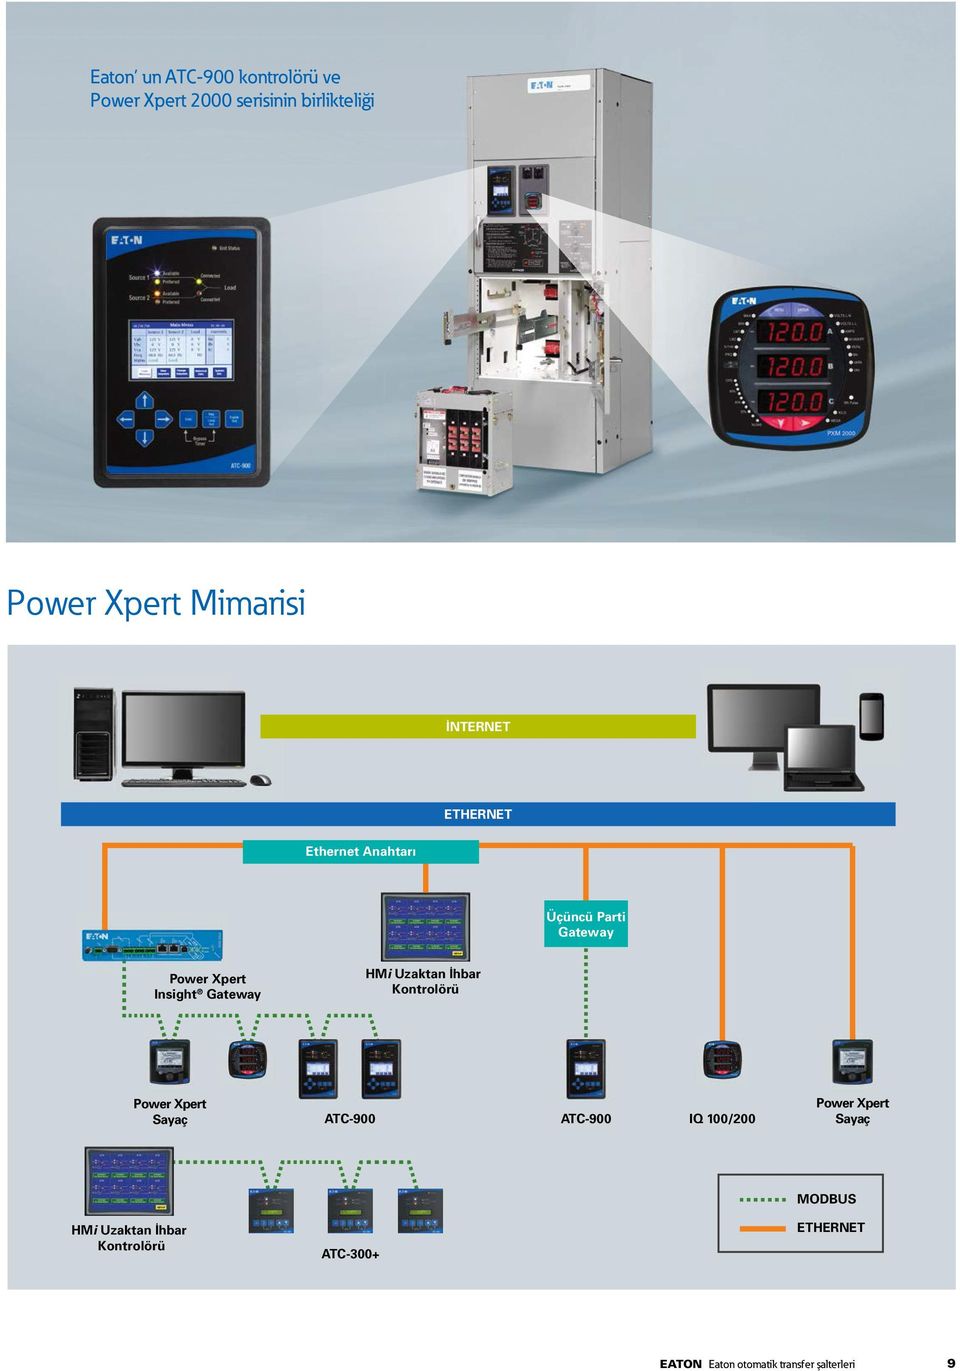 Power Xpert Sayaç HMi Uzaktan İhbar Kontrolörü ATC900 ATC900 IQ / Power Xpert Sayaç